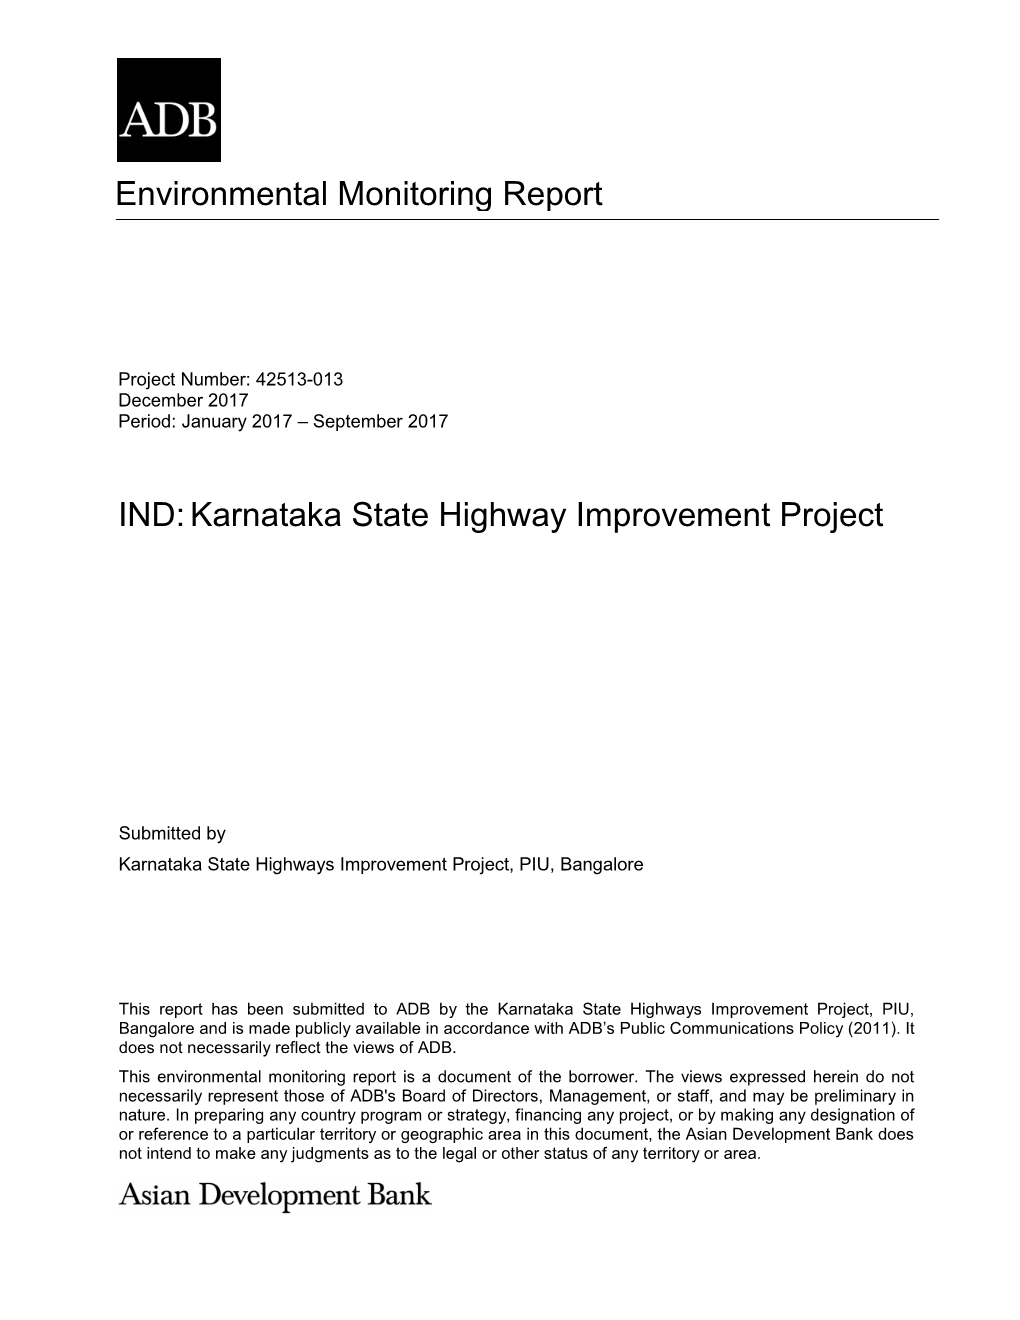 Environmental Monitoring Report IND:Karnataka State Highway